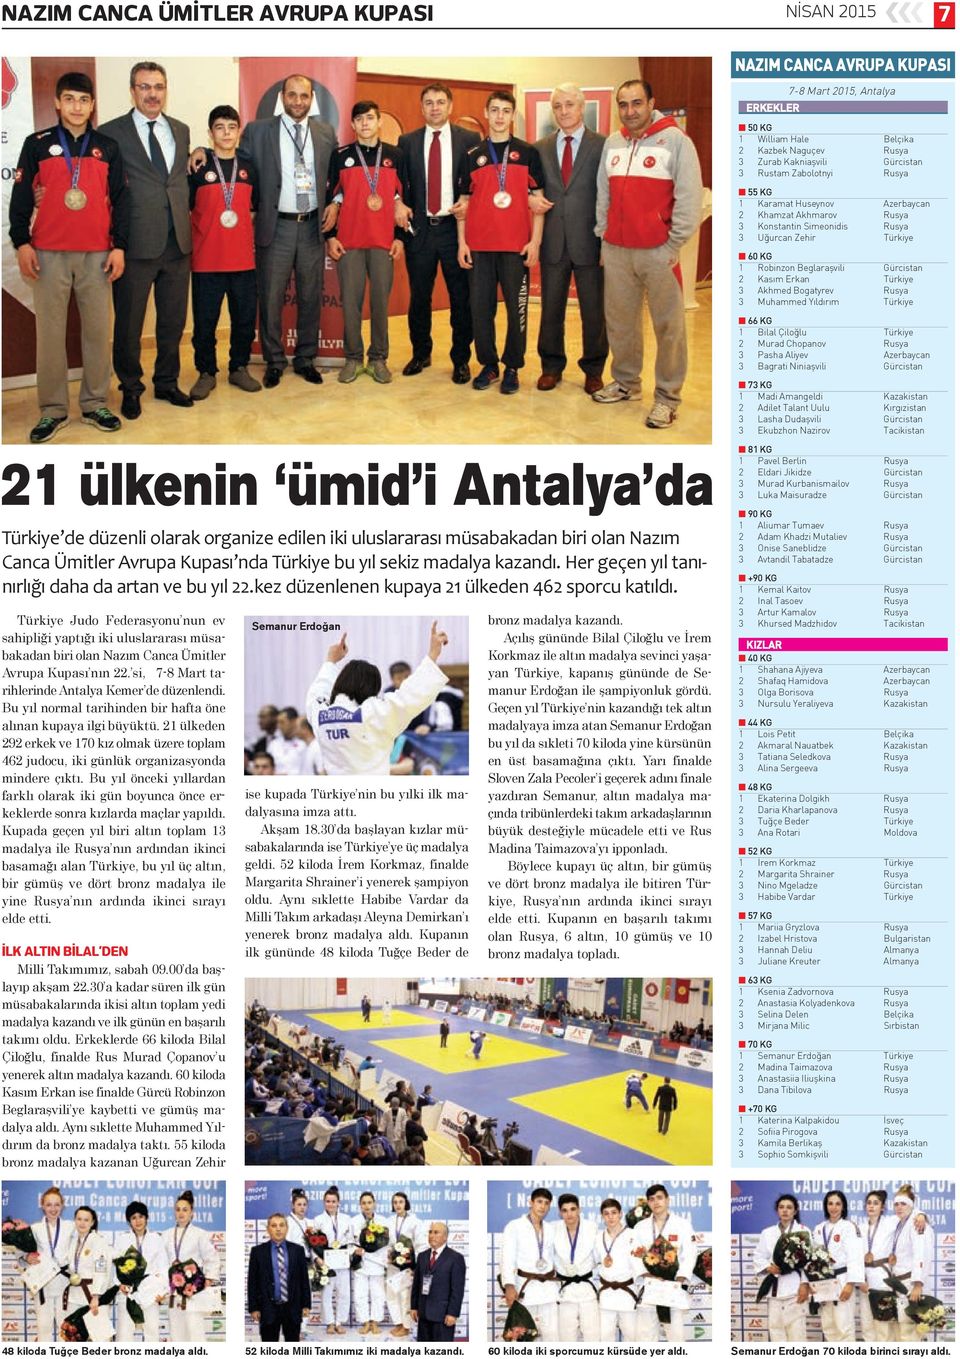 Türkiye Judo Federasyonu nun ev sahipliği yaptığı iki uluslararası müsabakadan biri olan Nazım Canca Ümitler Avrupa Kupası nın 22. si, 7-8 Mart tarihlerinde Antalya Kemer de düzenlendi.